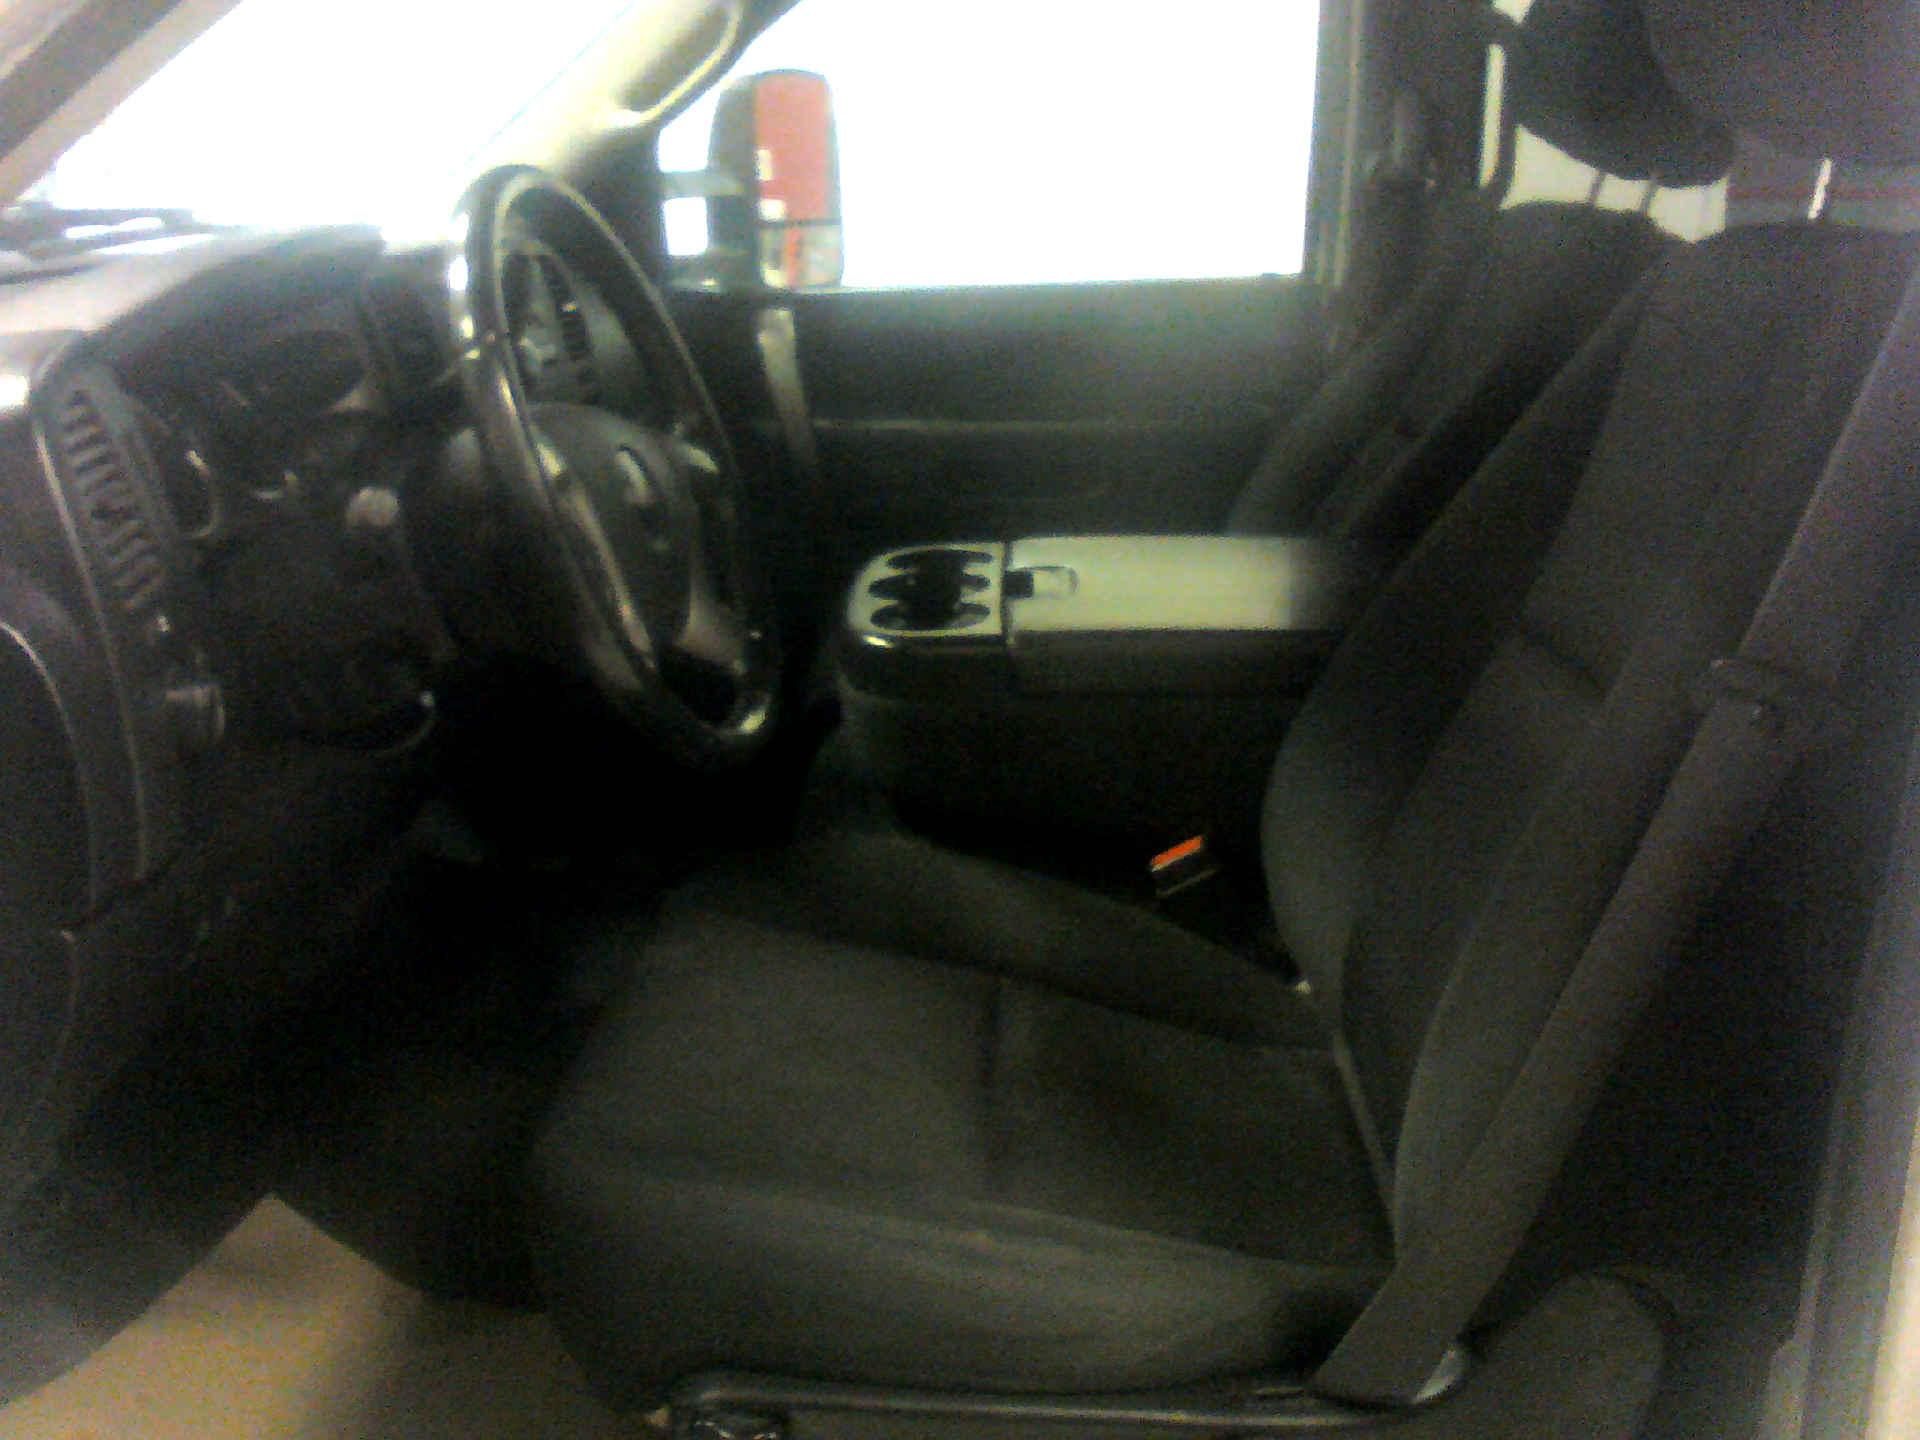 2012 GMC SIERRA 2500HD SLE CREW CAB 4WD 6.0L V8 OHV 16V FFV AUTOMATIC SN:1GT120CG5CF114889 OPTIONS: - Image 5 of 9